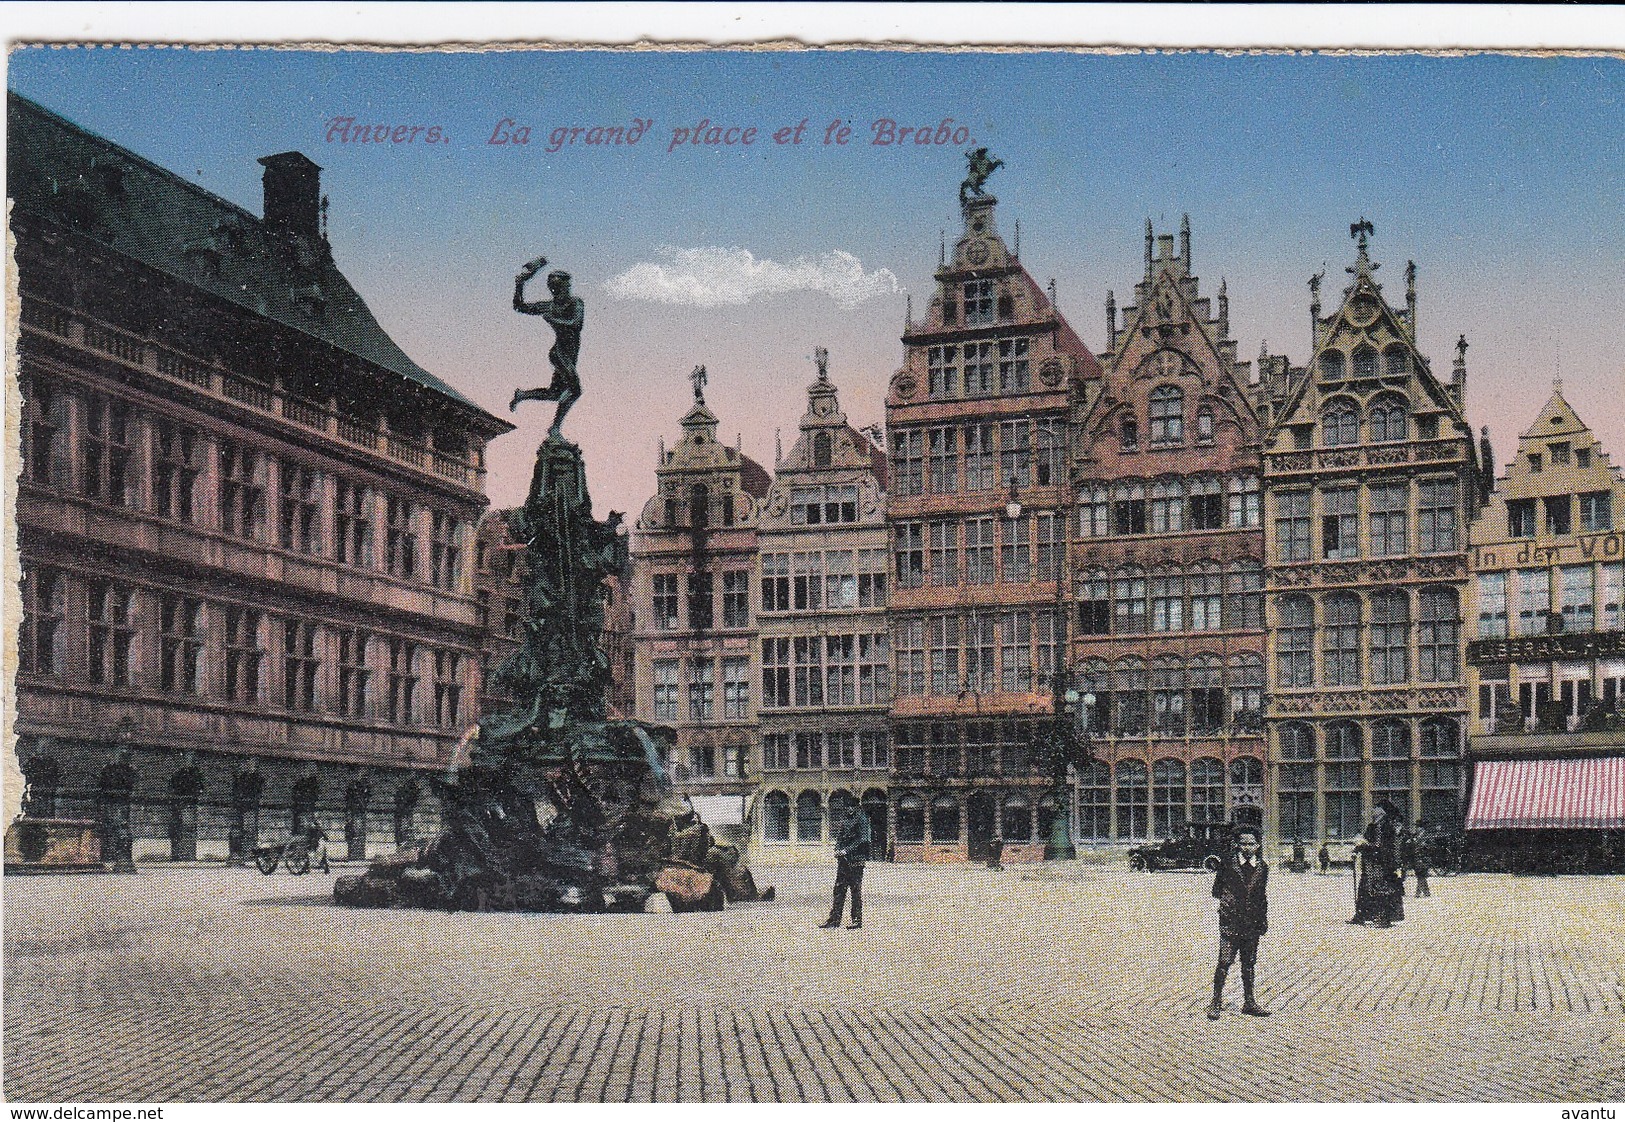 ANTWERPEN / GROTE MARKT EN BRABO / OORLOG 1914-18 / FELDPOST STEMPEL A LDST FUSS ART BAT 1916 - Antwerpen